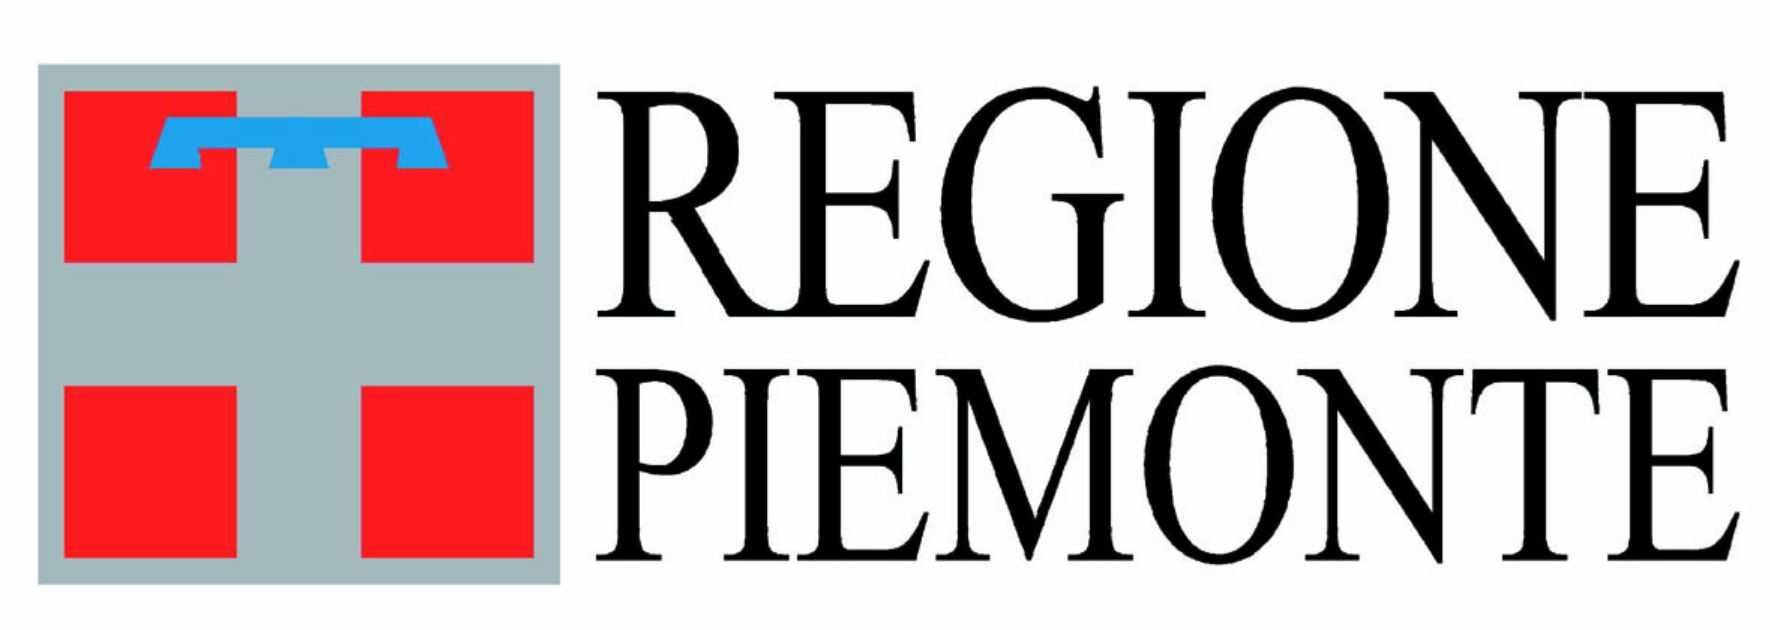 Logo regione Piemonte